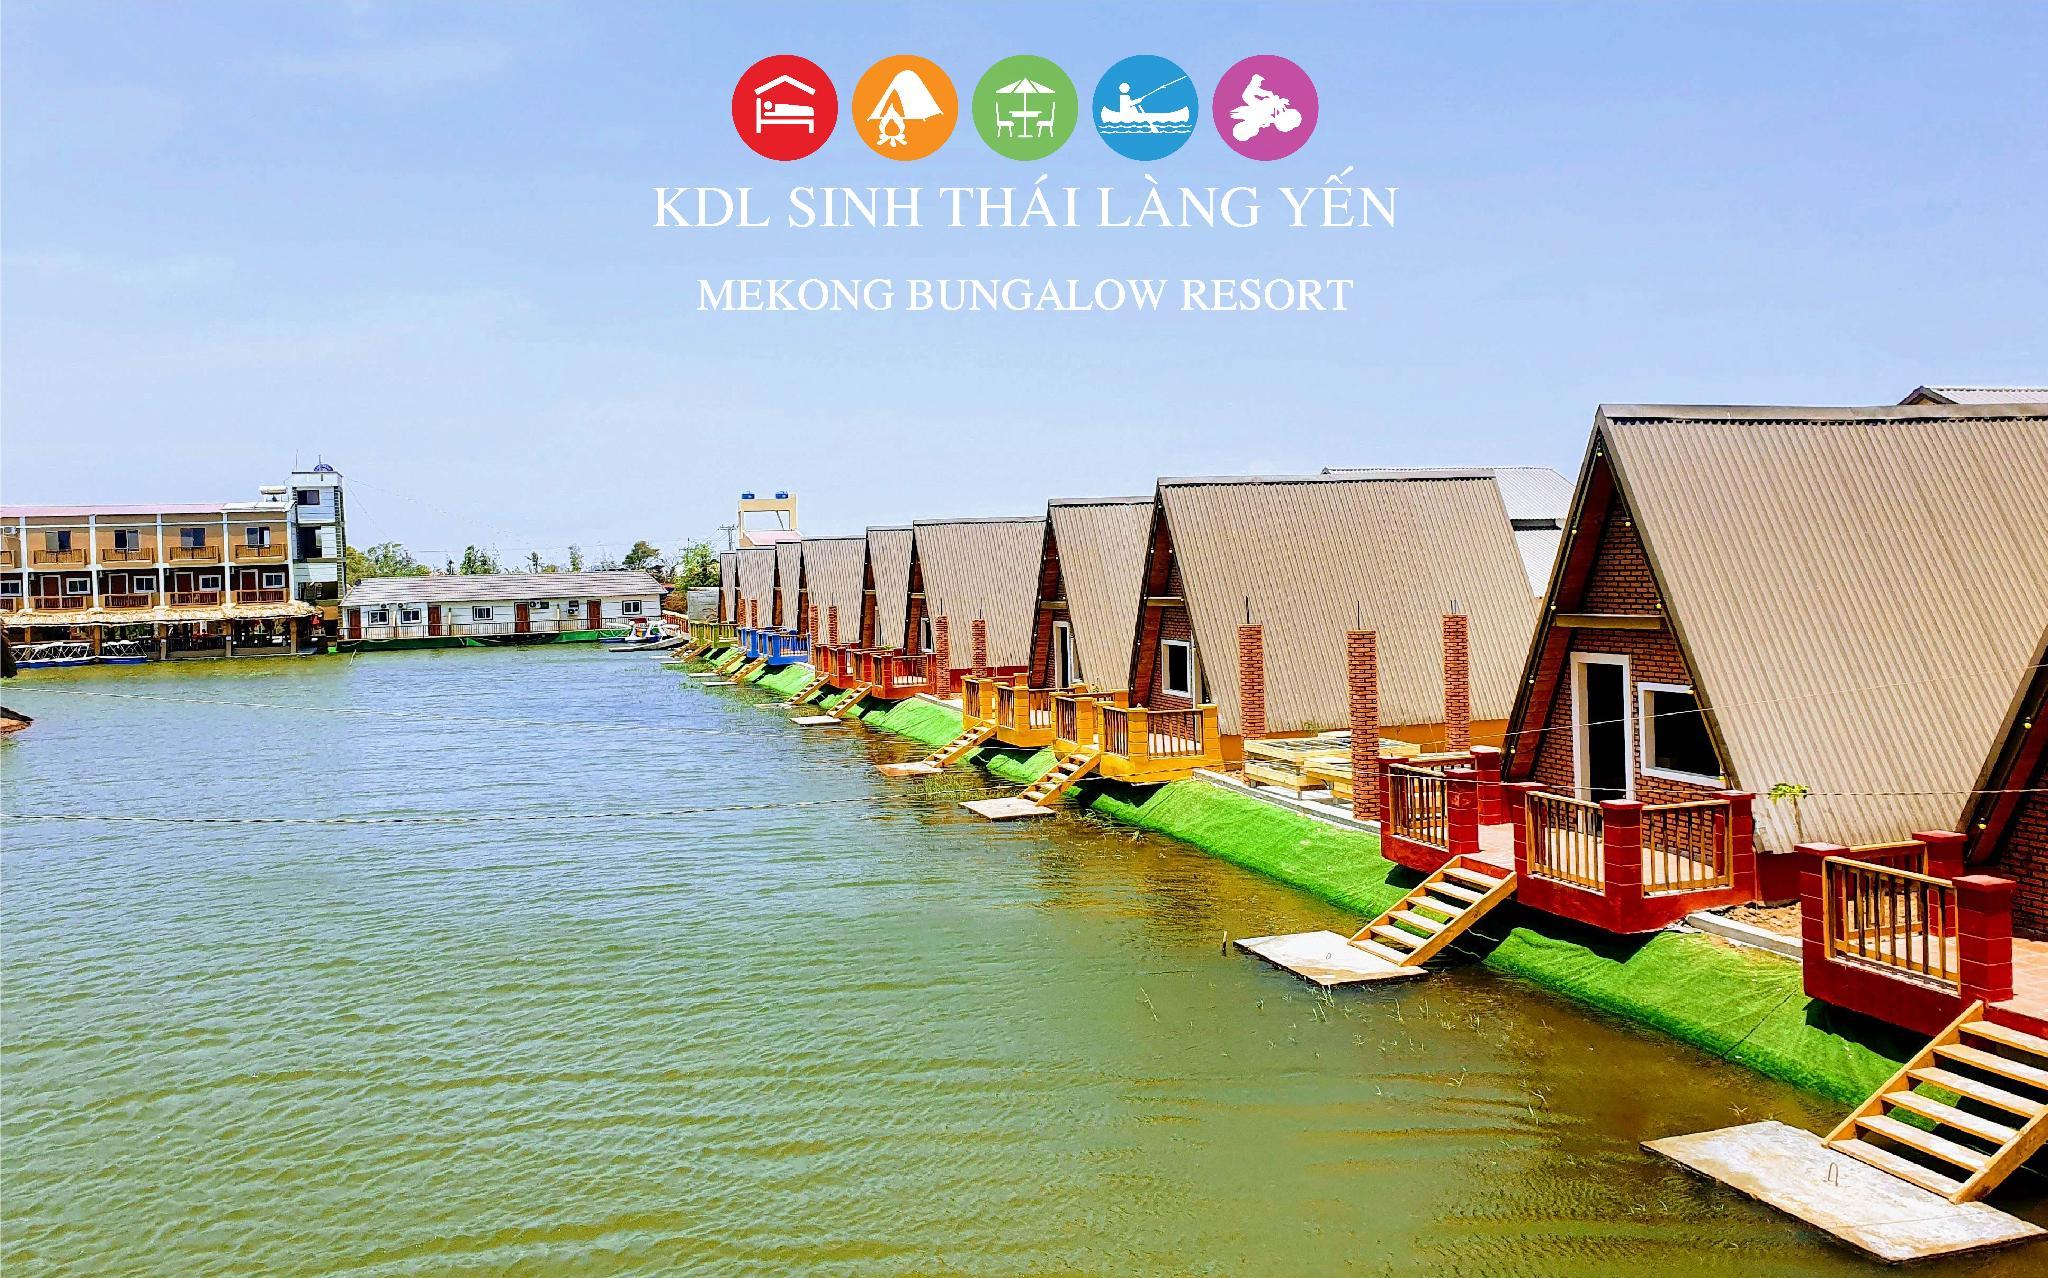 Khu du lịch sinh thái Làng Yến Gò Công, Việt Nam: Agoda.com có giá rẻ nhất